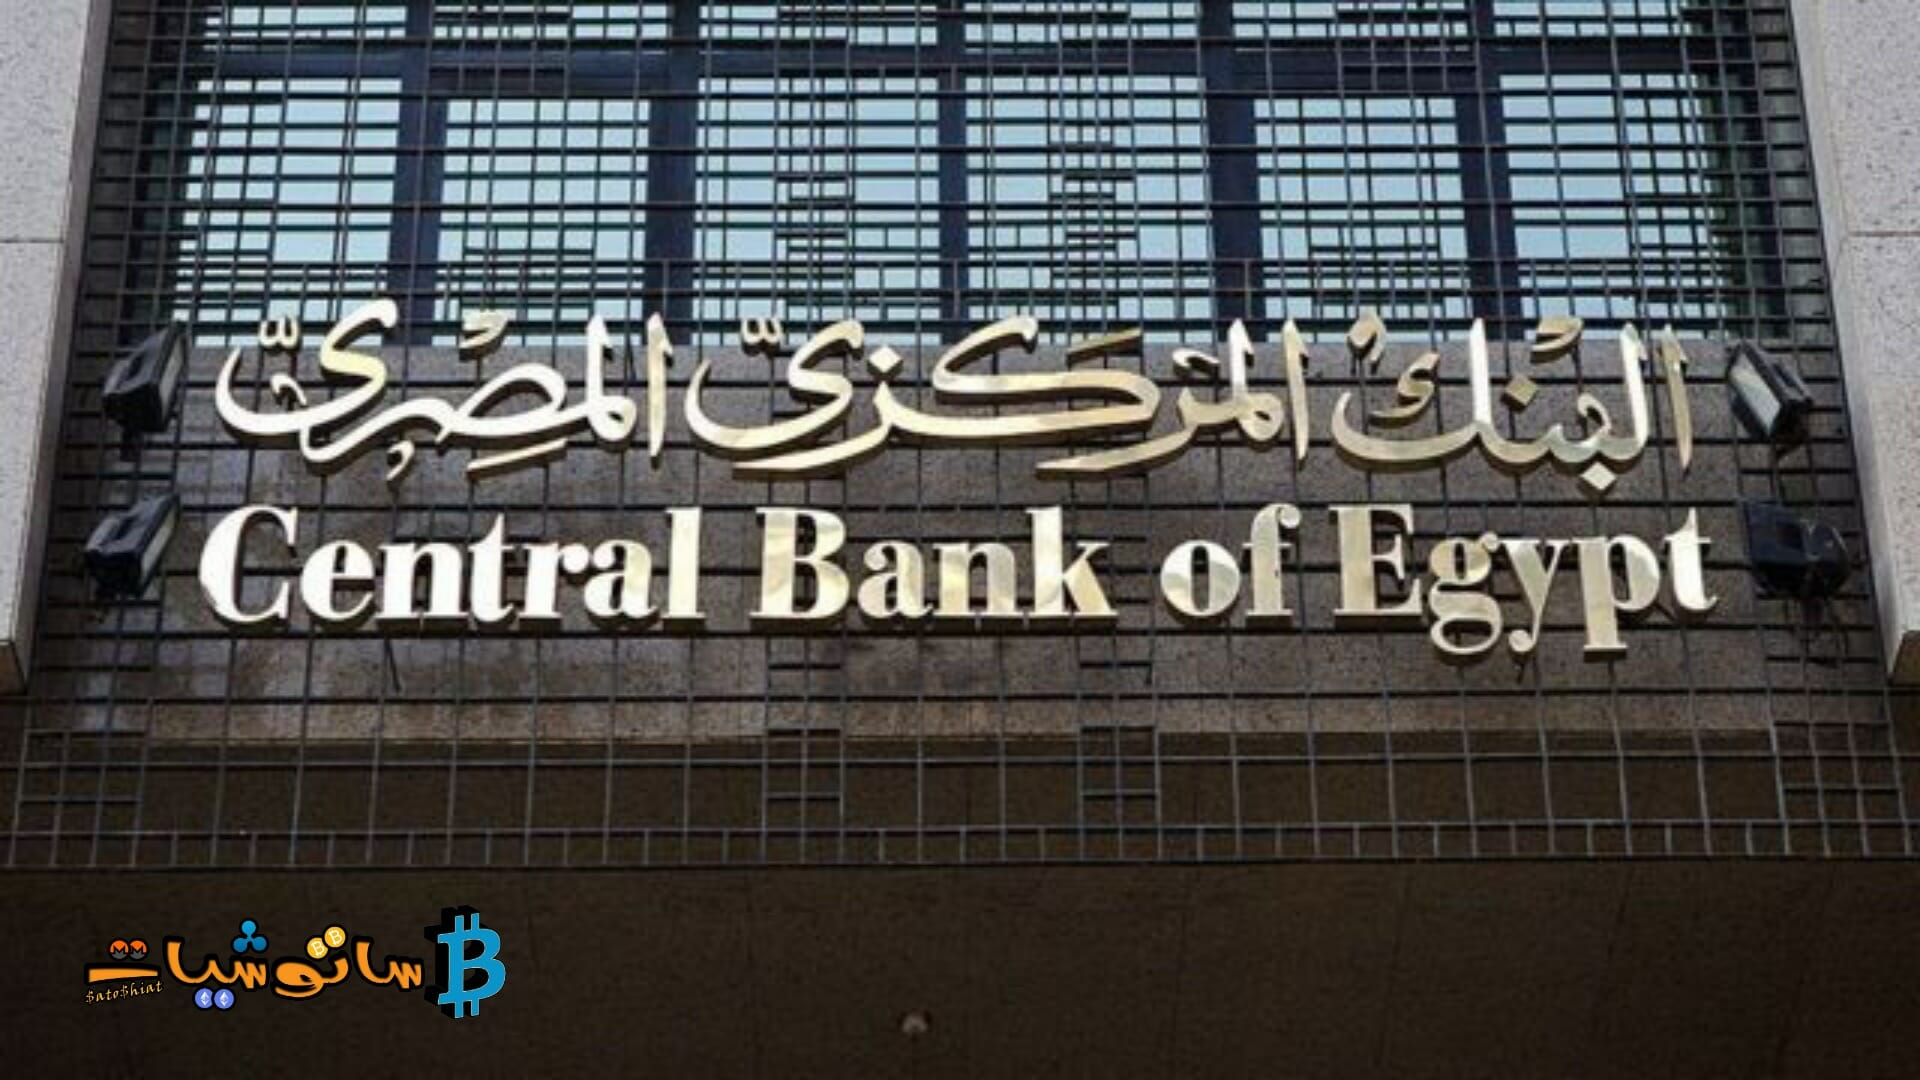 البنك المركزي المصري يوجه رسالة بشأن تداول العملات الرقمية في مصر